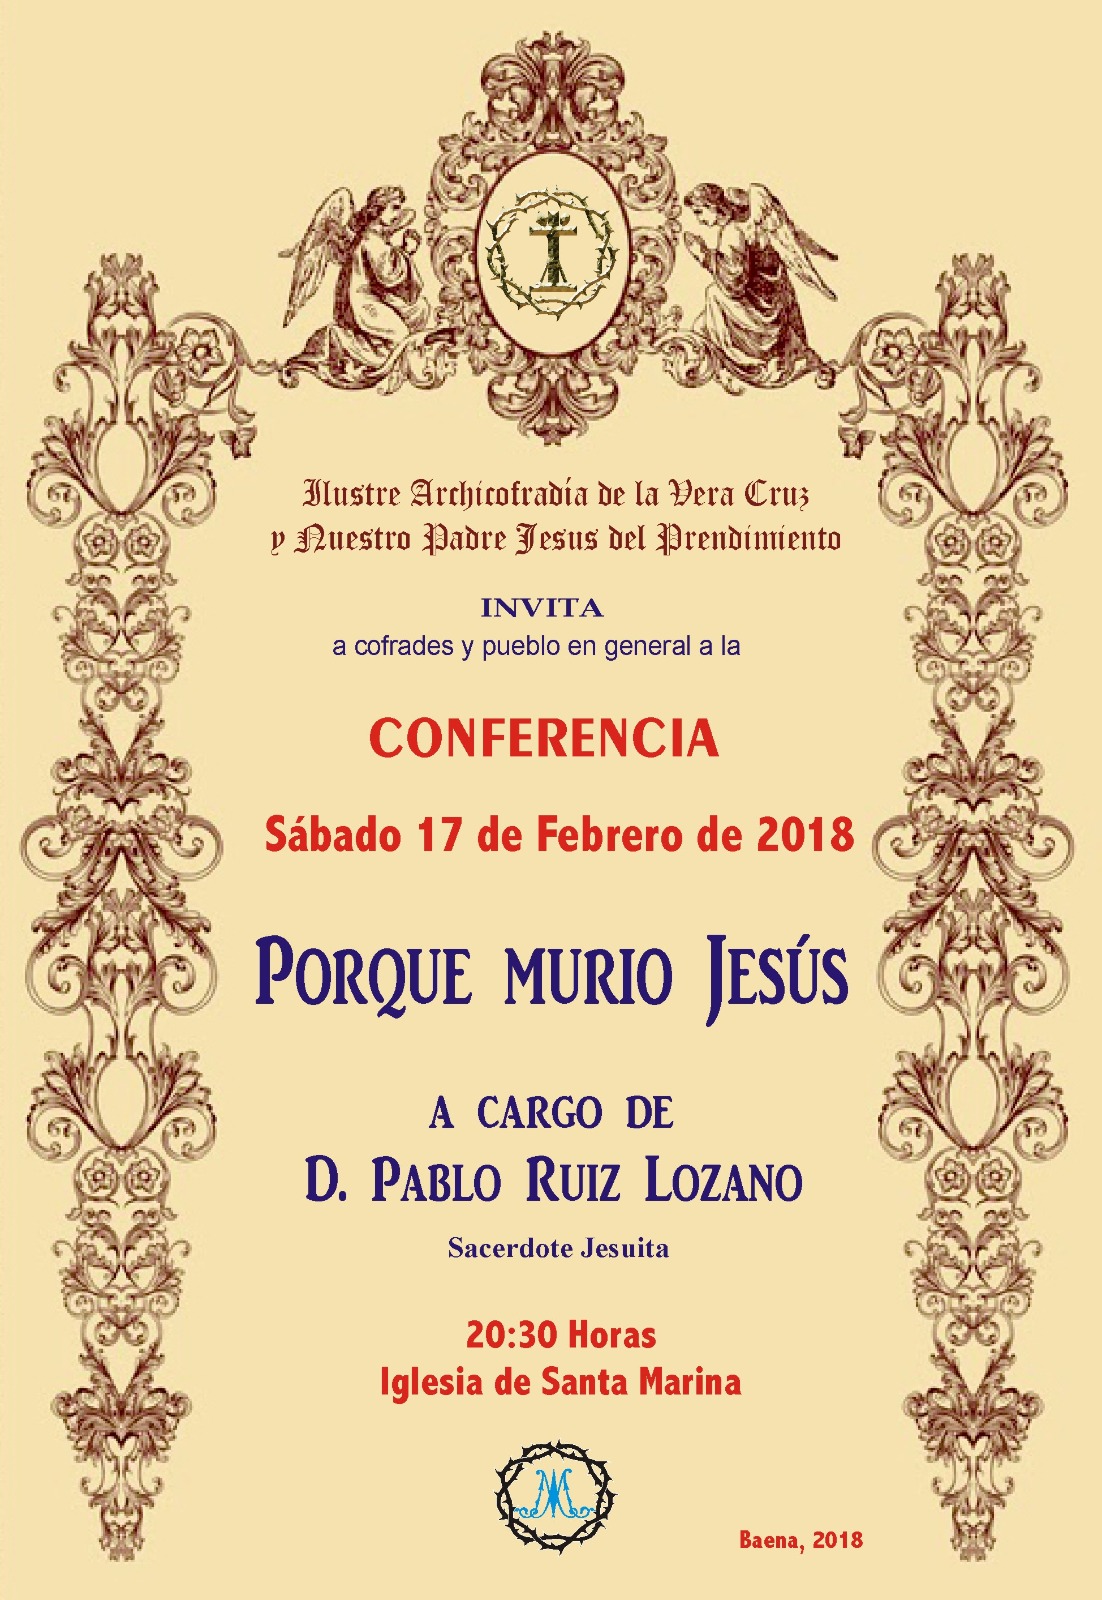 Conferencia "Porque murió Jesús"